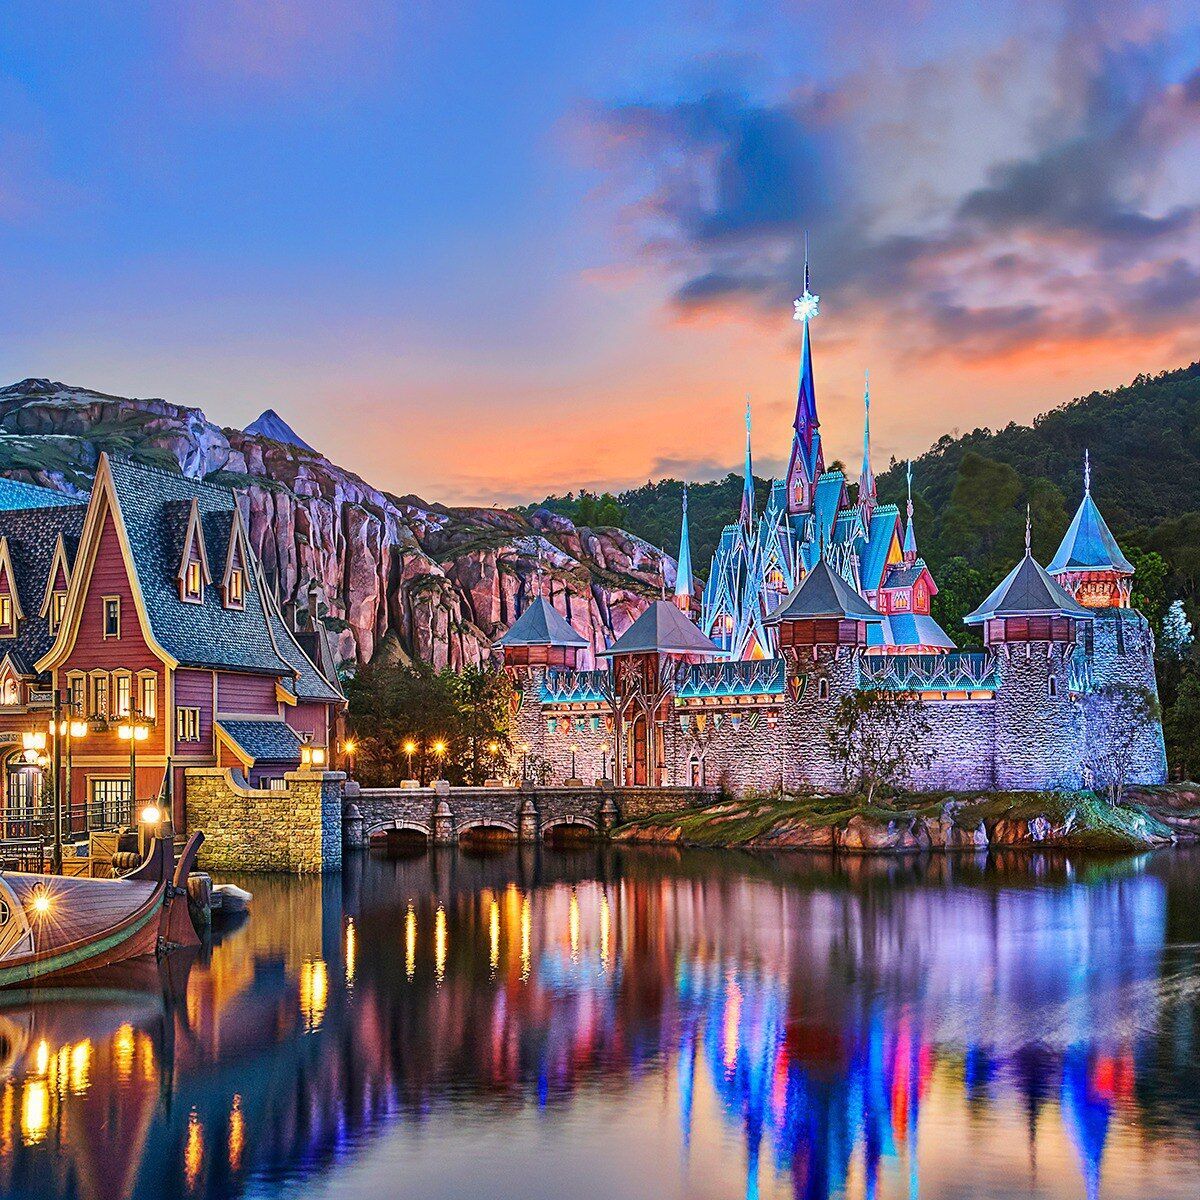 Hong Kong Disneyland has a Frozen zone: new entertainment